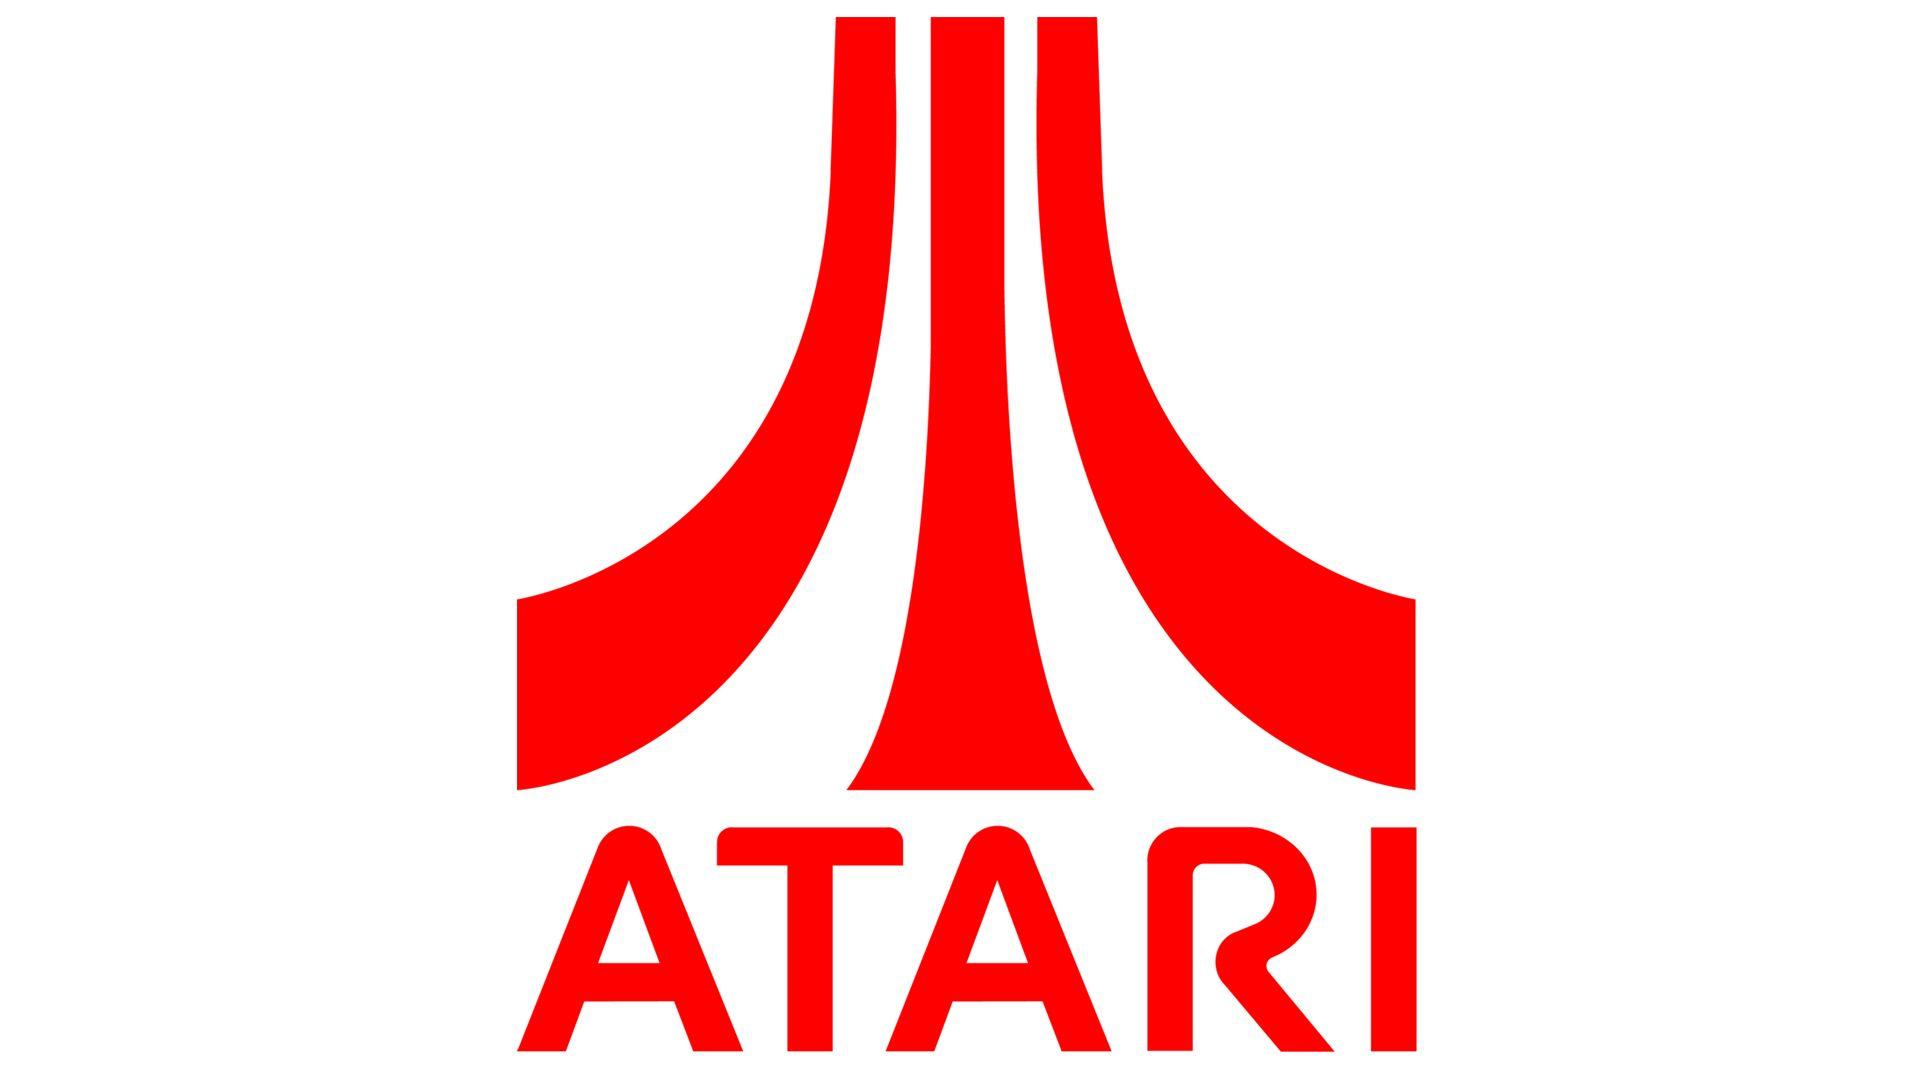 Atari Logo - Atari Logo, Atari Symbol, Meaning, History and Evolution